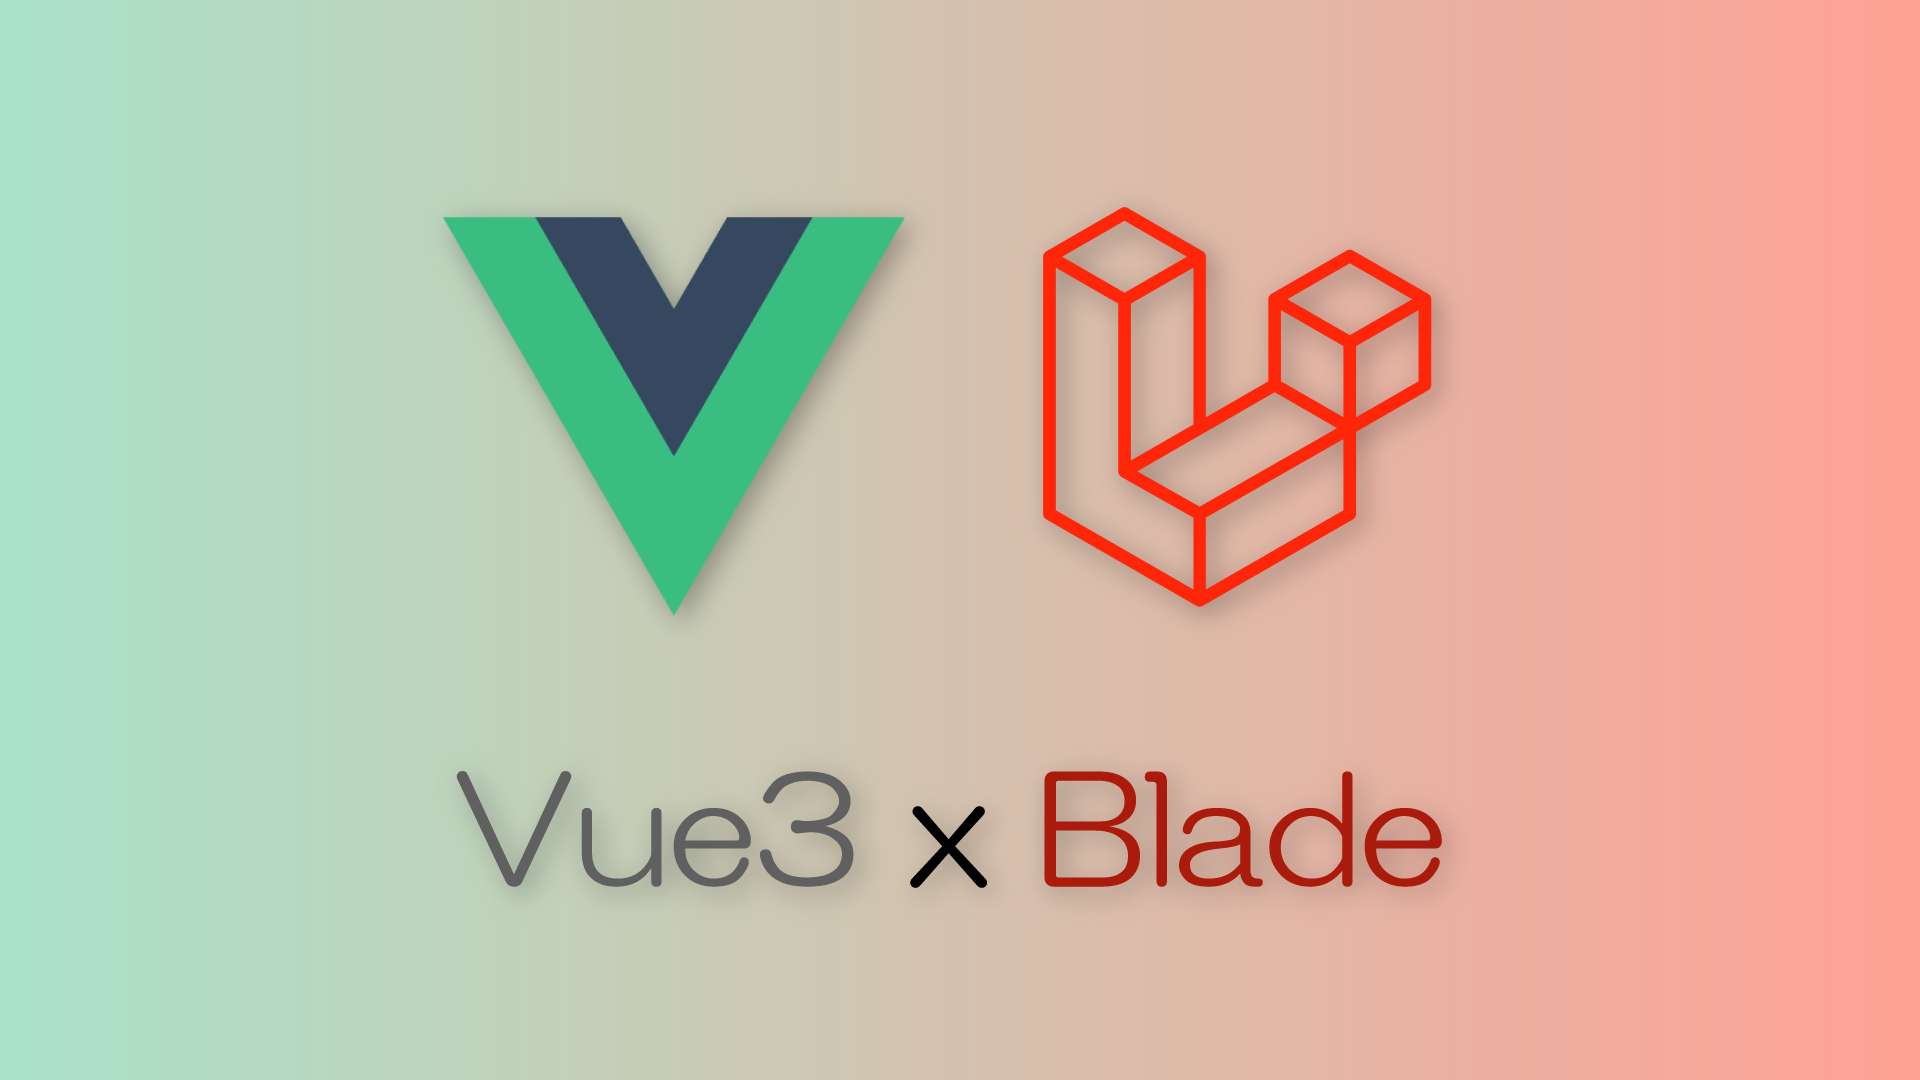 【Laravel】BladeファイルでVue3のコンポーネントを利用する方法【Vue3】